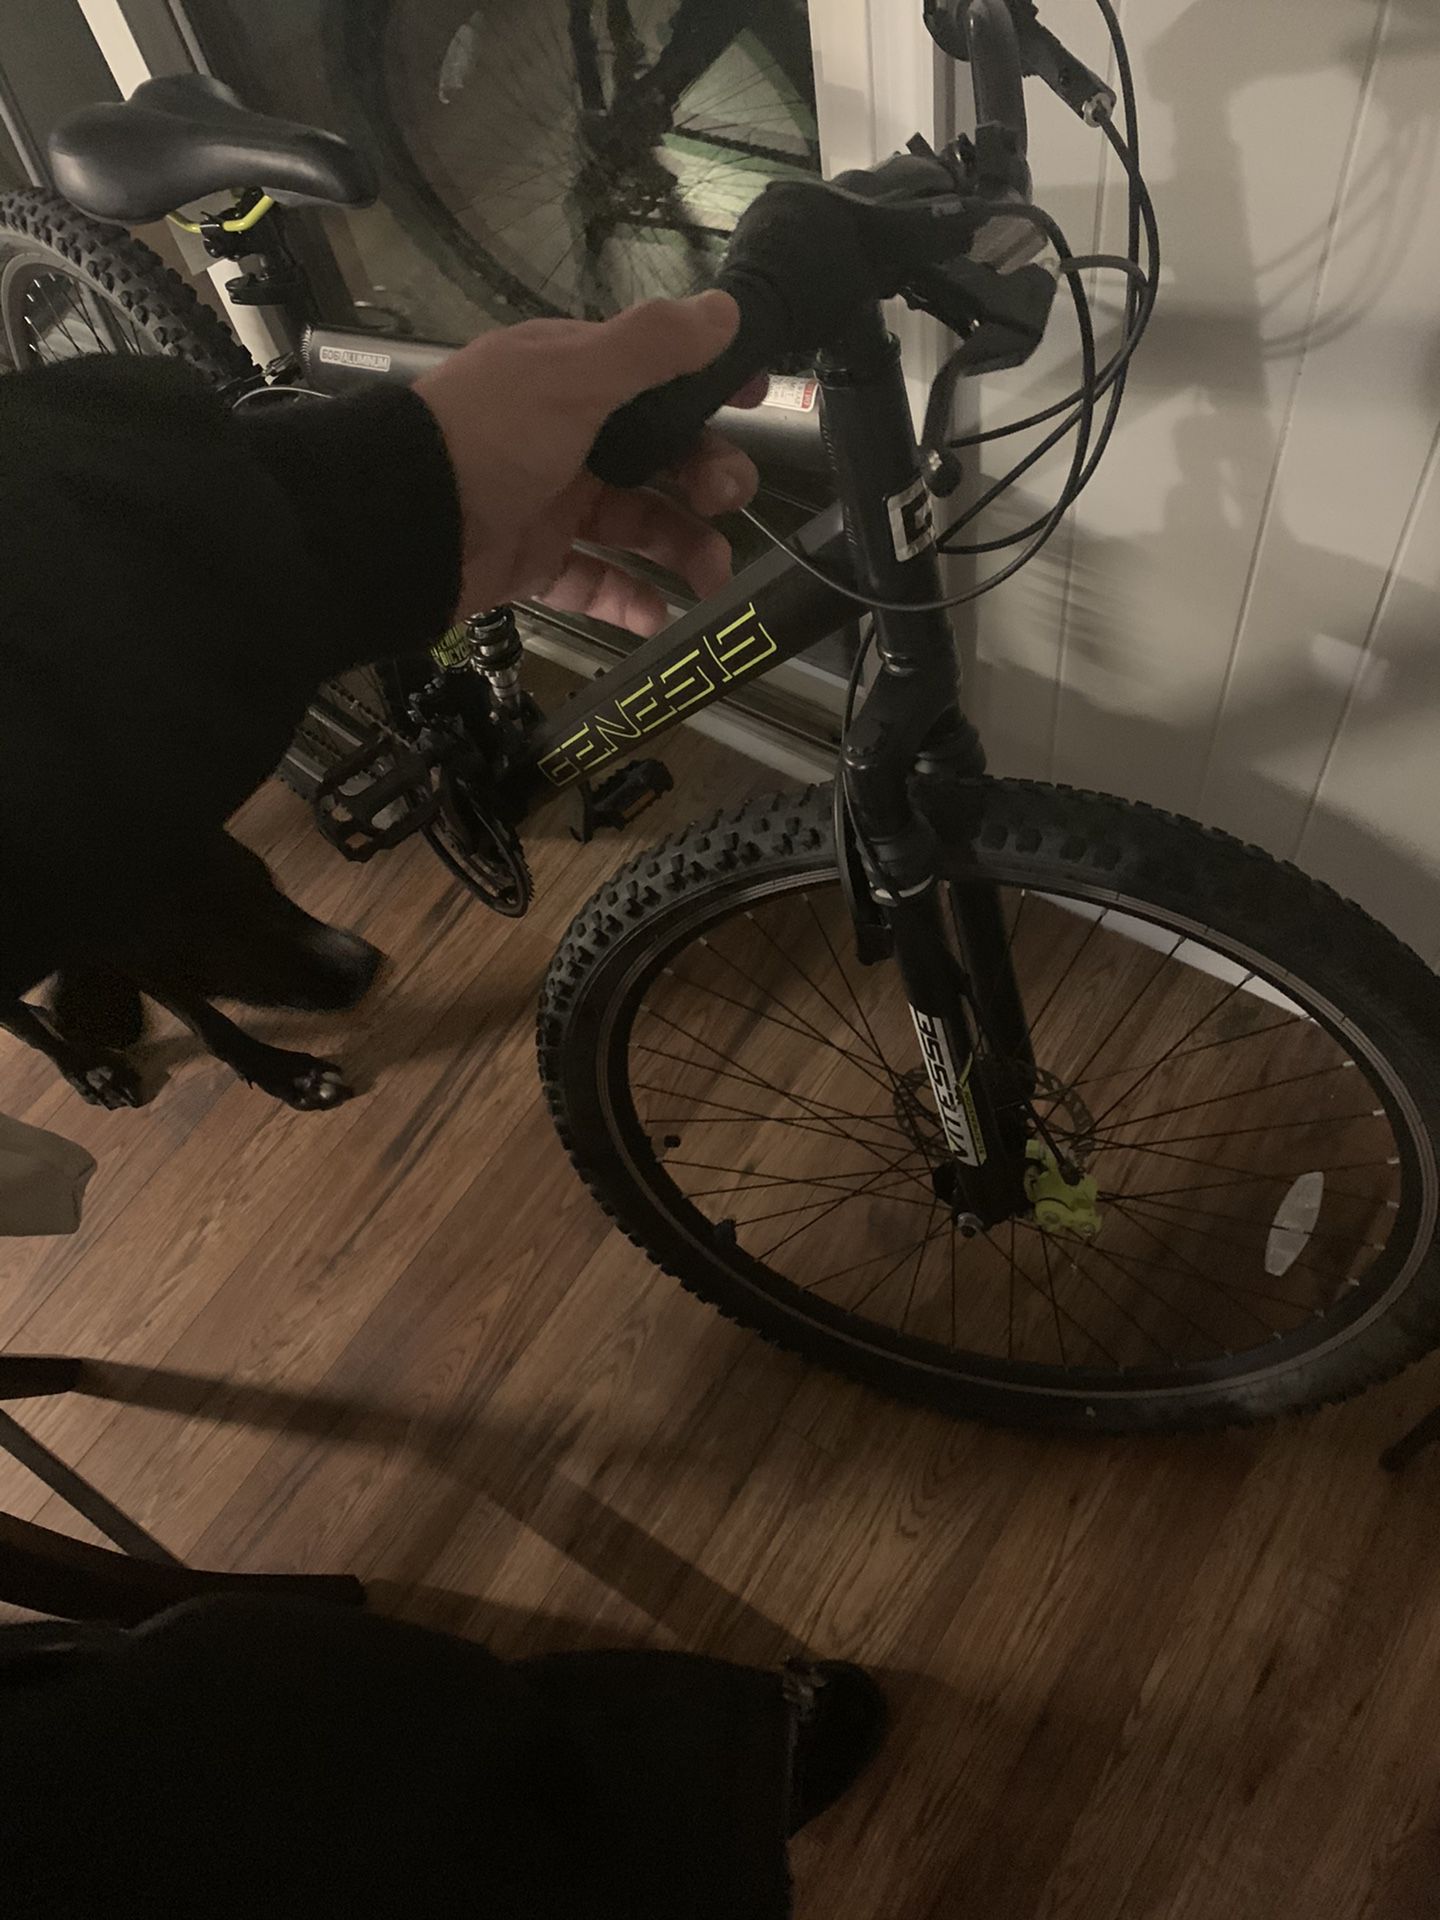 Genesis 29’ Incline Bike Black and Green